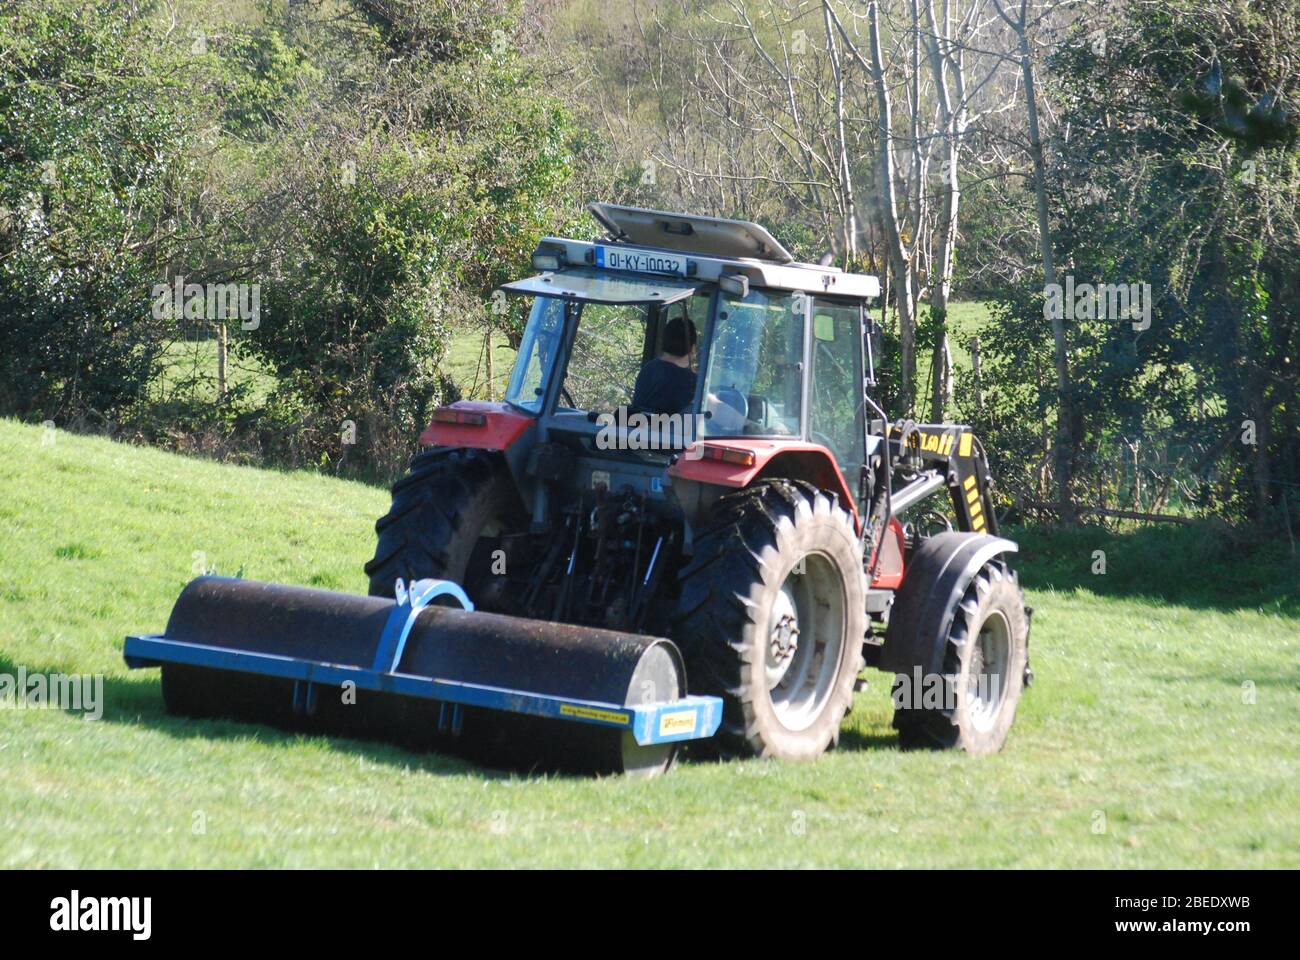 Farmer rolling field in Slaheny, Kilgarvan, Co. Kerry Stock Photo